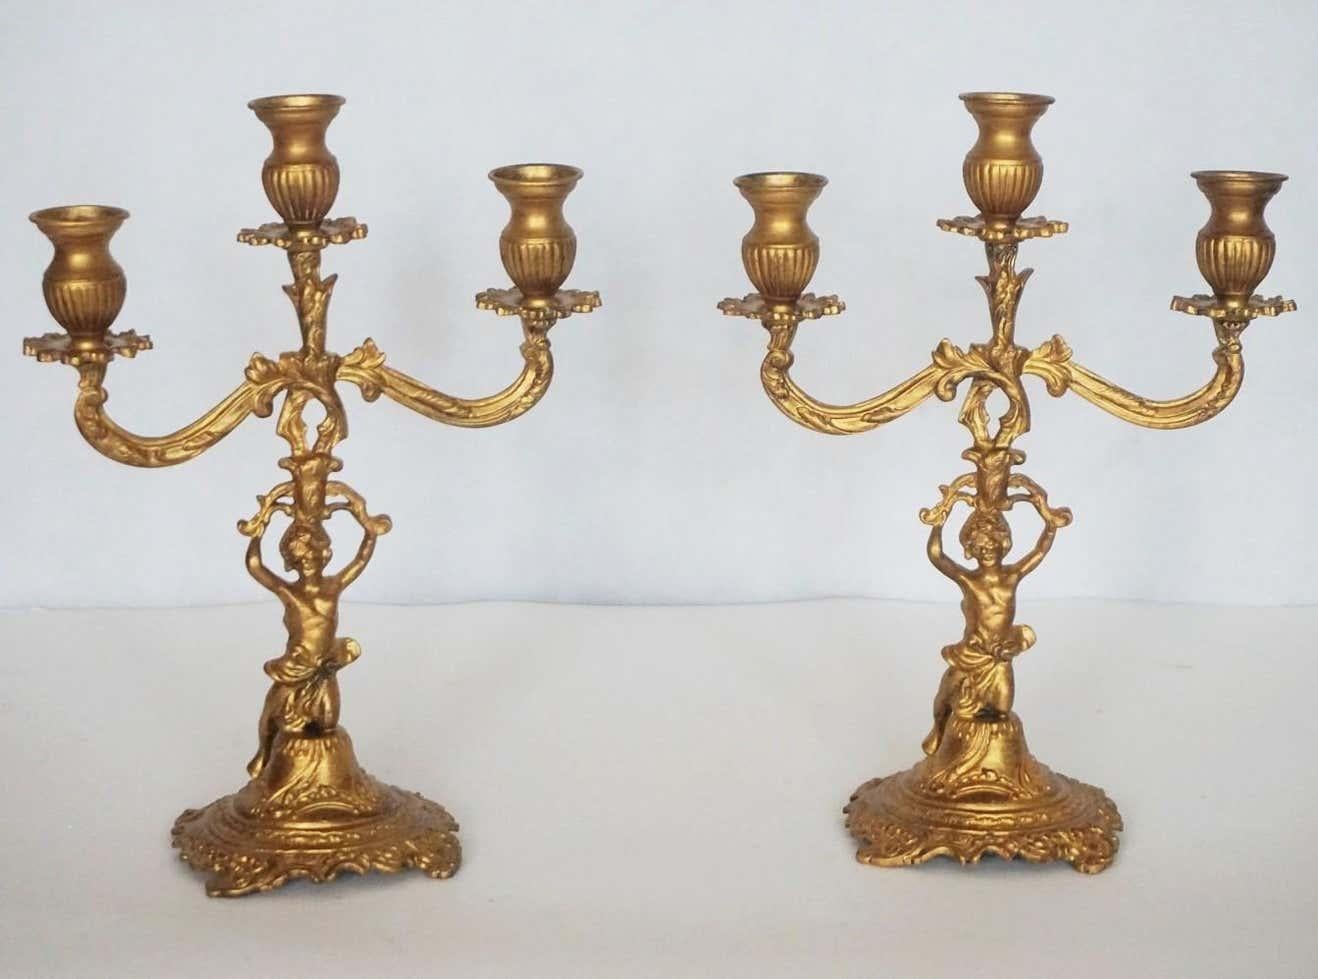 Paire de candélabres à trois lumières en bronze doré avec un putto agenouillé tenant les chandeliers sur une base richement élaborée, France, fin du XIXe siècle.
Mesures :
Hauteur 12.50 in / 31.5 cm
Largeur 9.50 in / 24 cm.